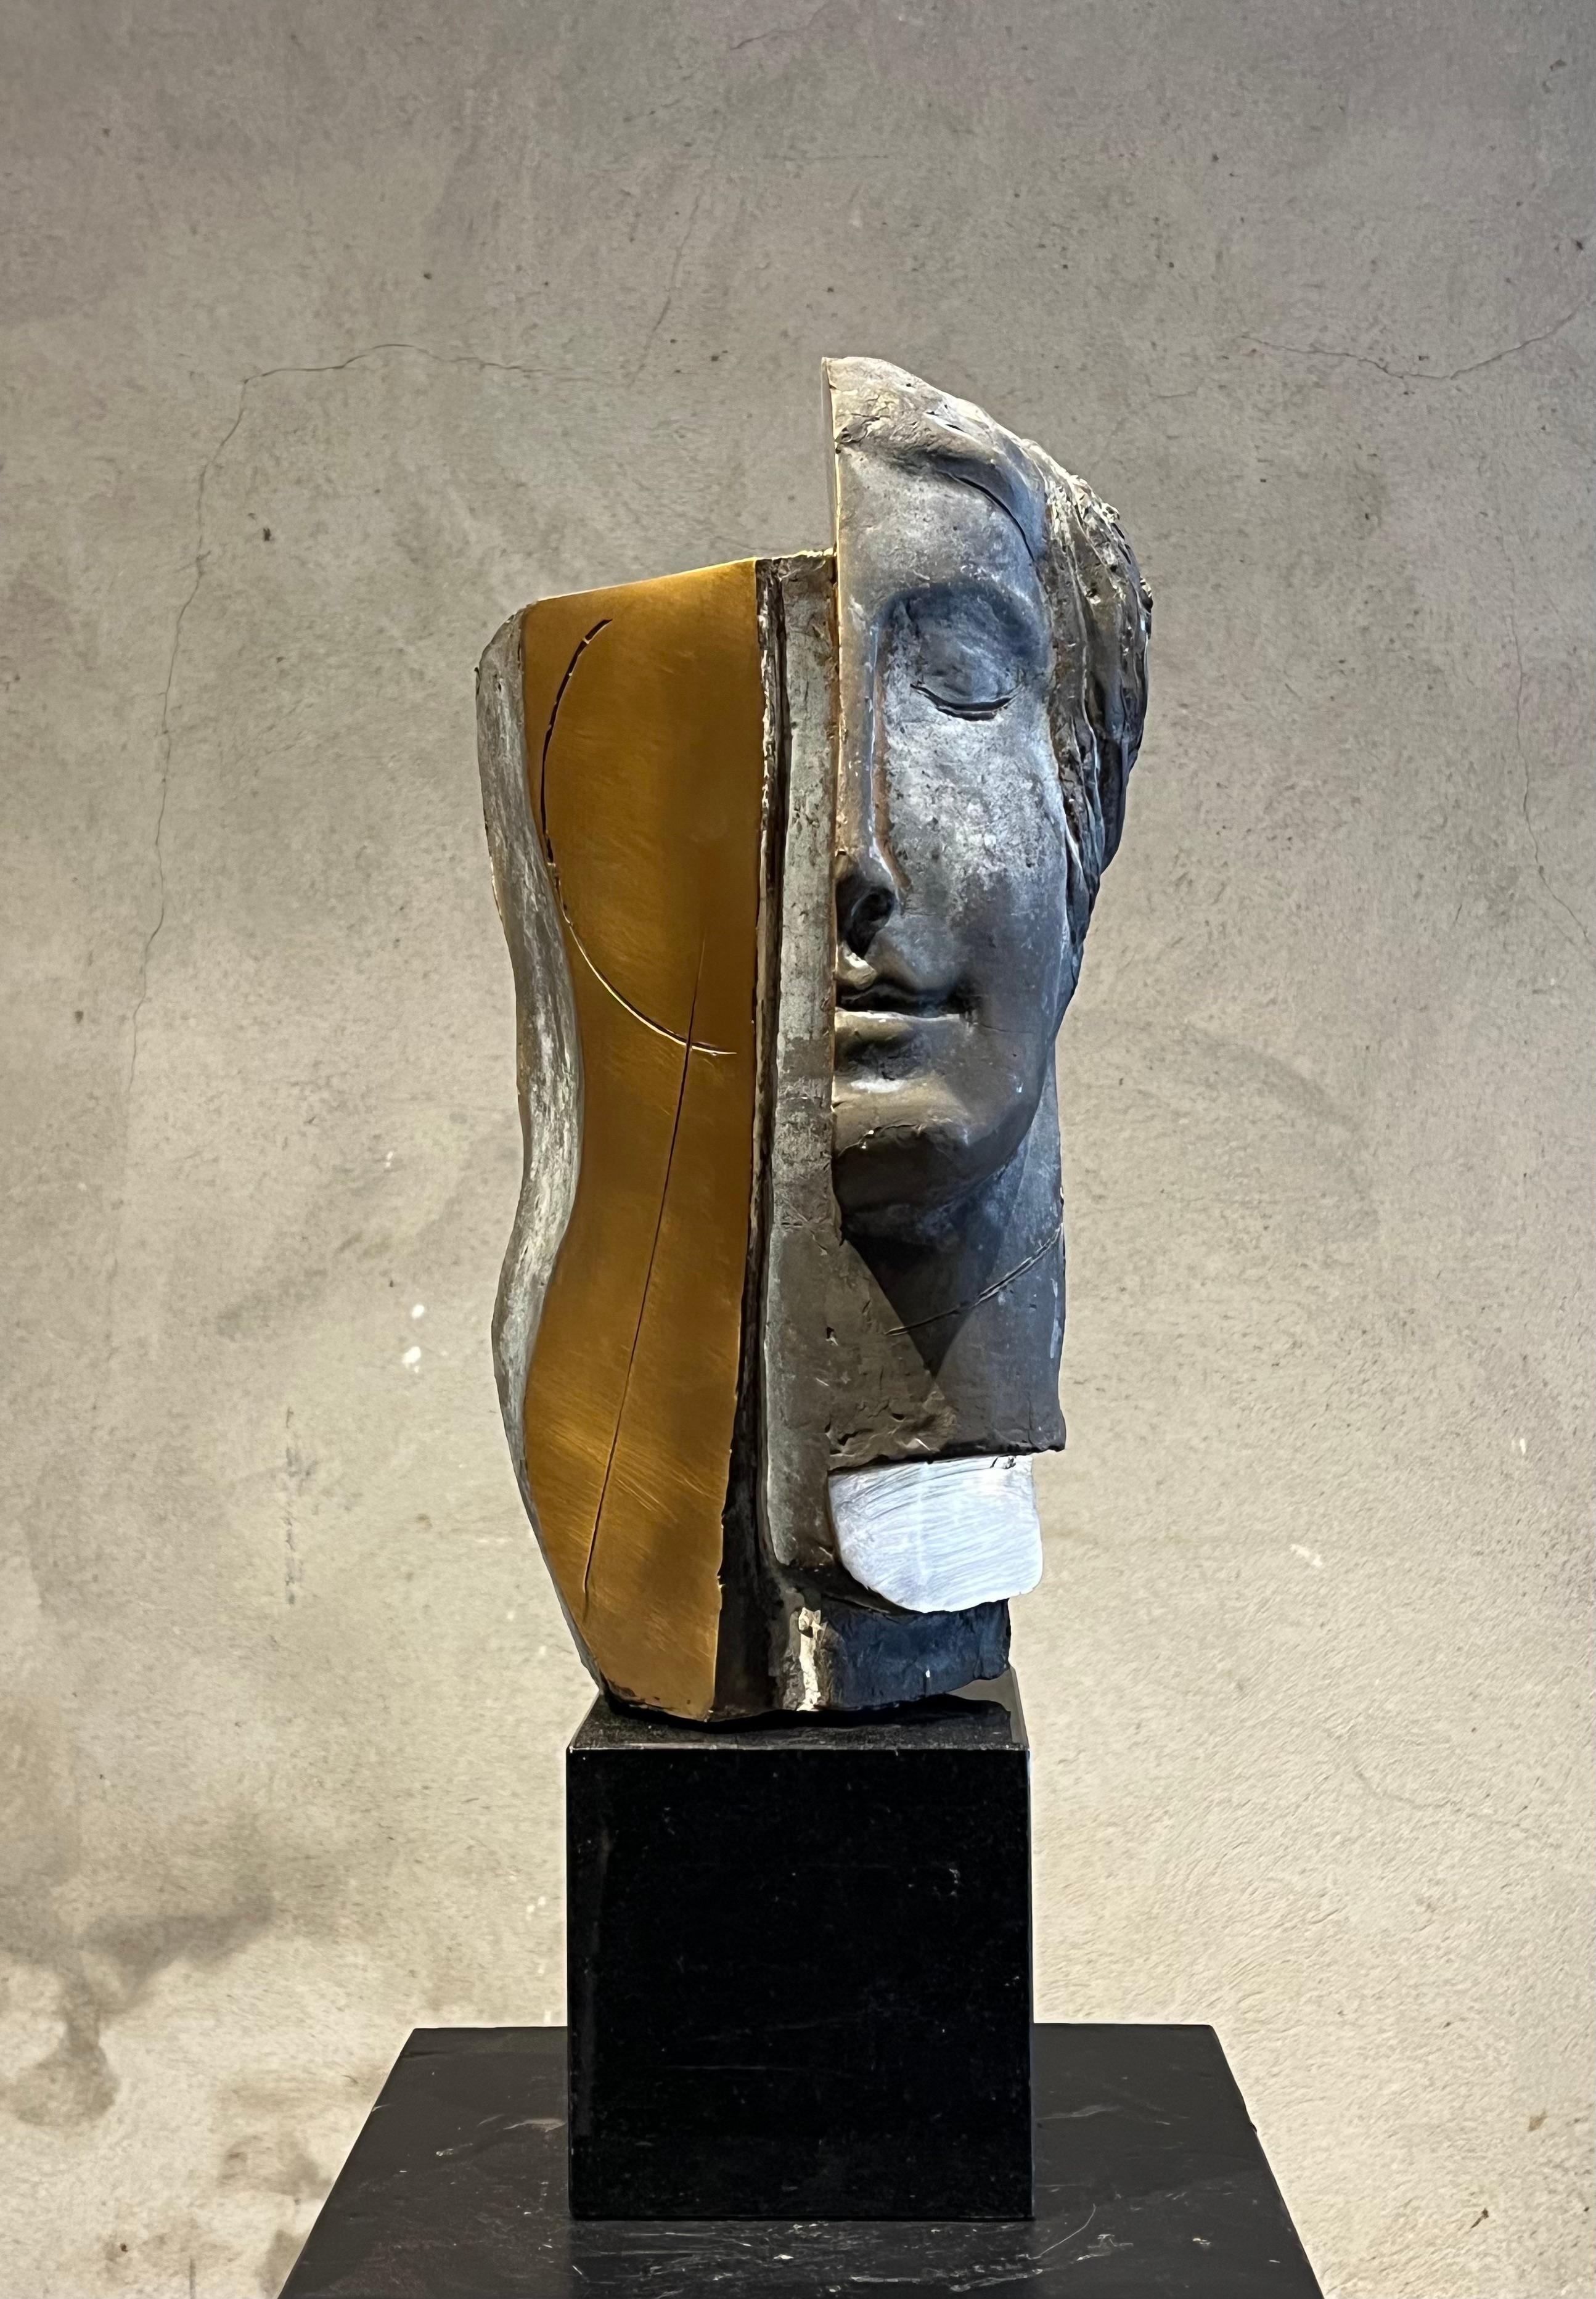 Thomas Junghans Figurative Sculpture - Beginn der Weisheit